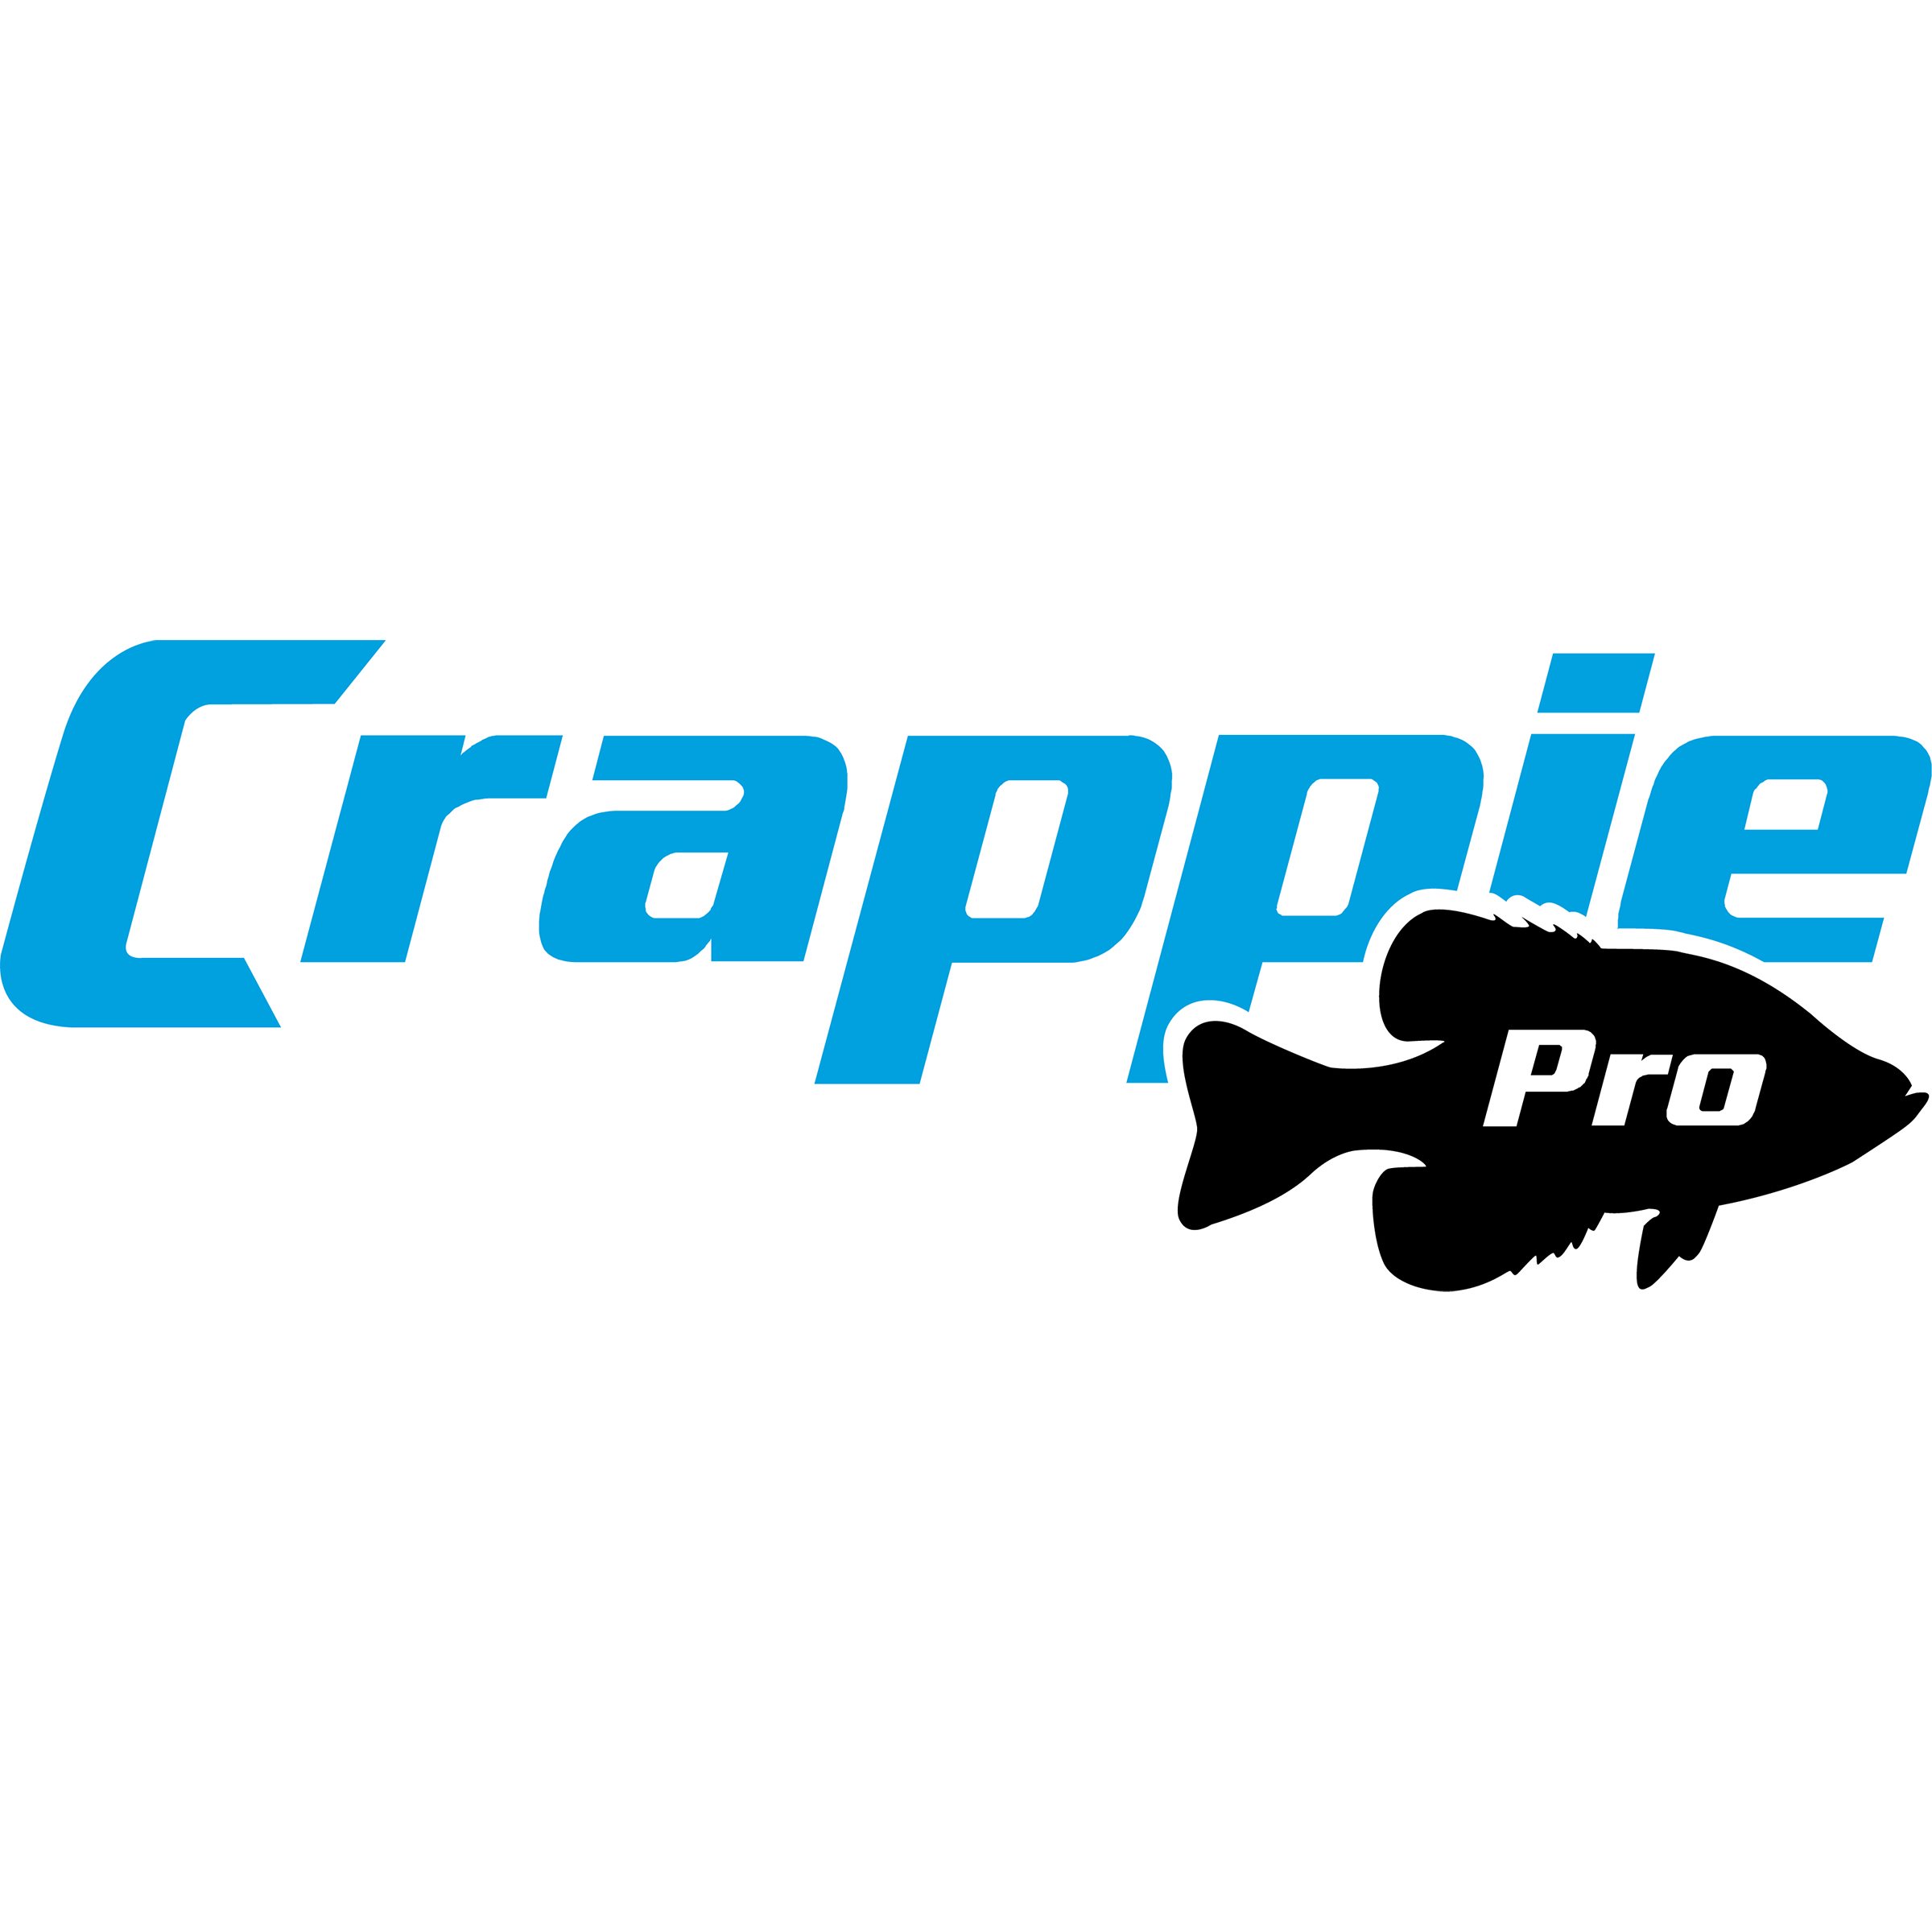 A_Crappie_logo